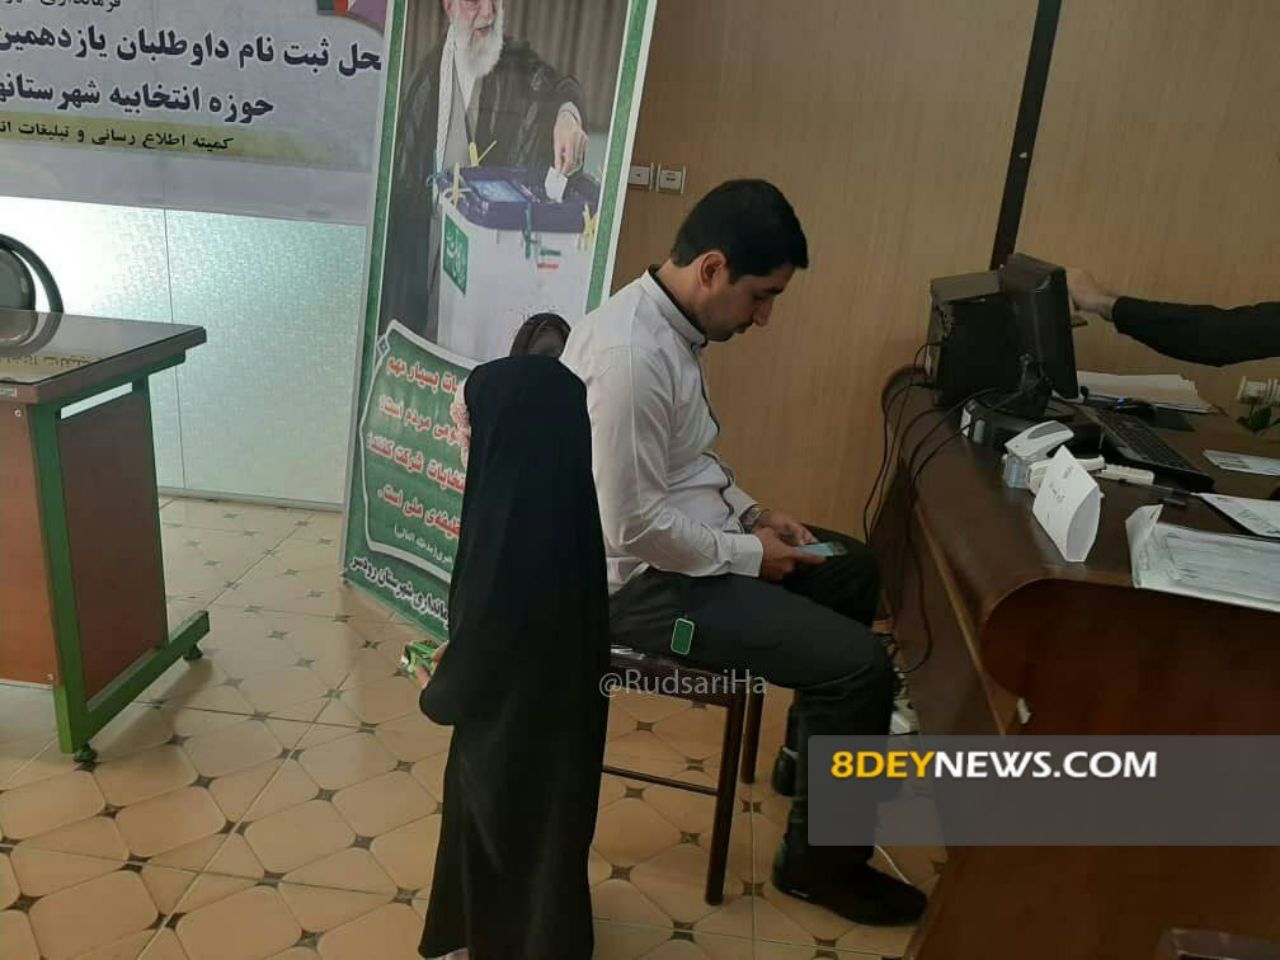 ثبت نام اولین داوطلب انتخابات مجلس در حوزه انتخابیه رودسر و املش + عکس